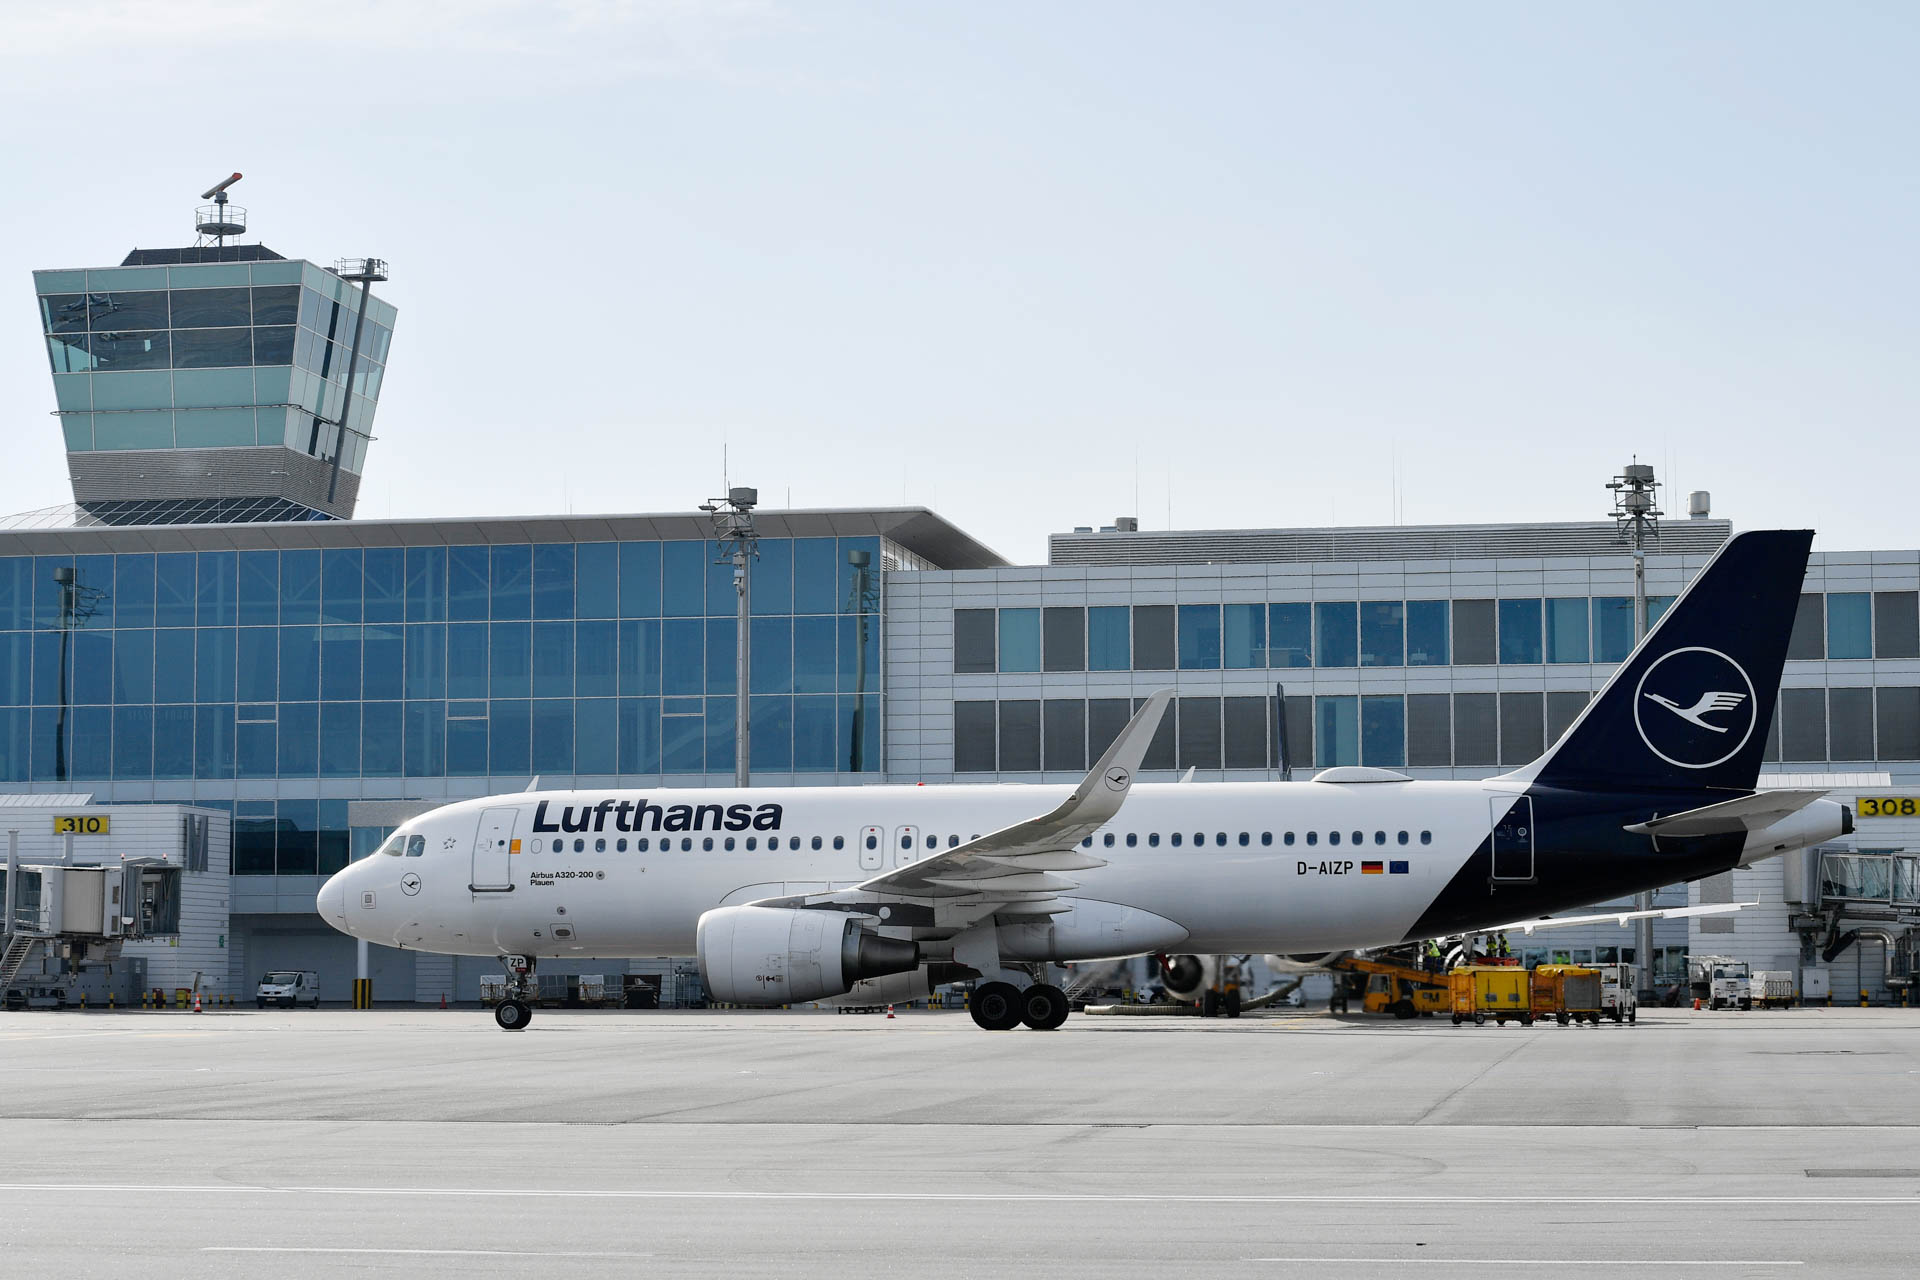 Der Lufthansa Airbus A320-200 Plauen. Foto: Deutsche Lufthansa AG